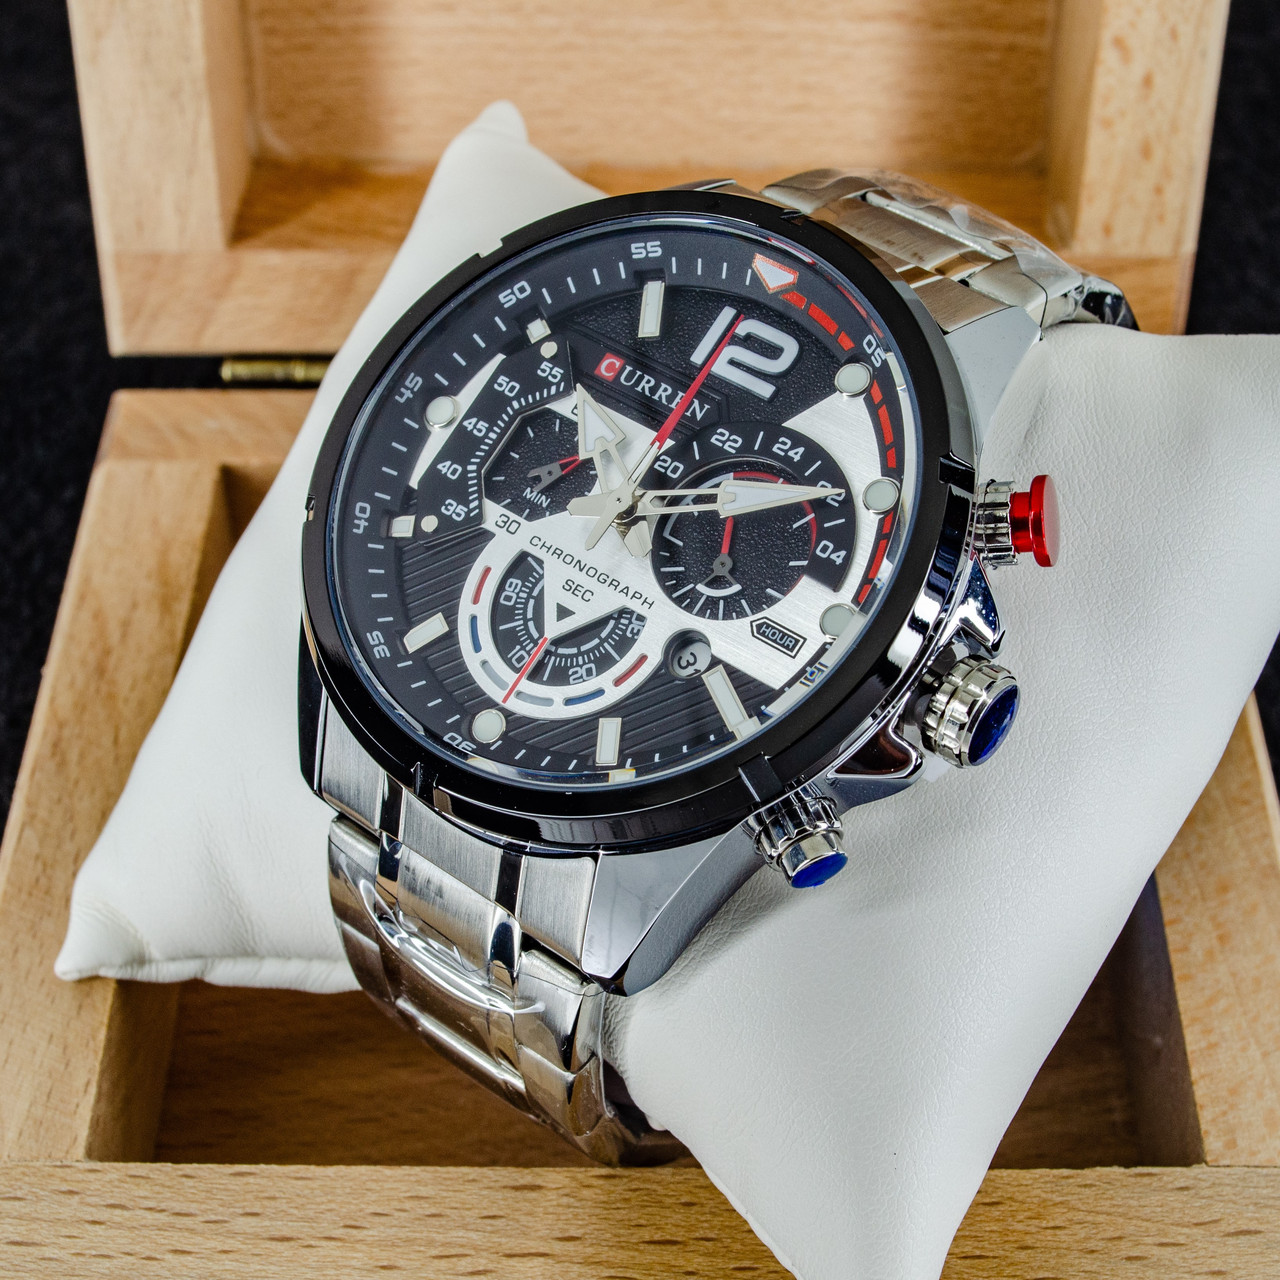 Чоловічий класичний кварцевий стрілочний наручний годинник з хронографом Curren 8395 SB. Металевий браслет